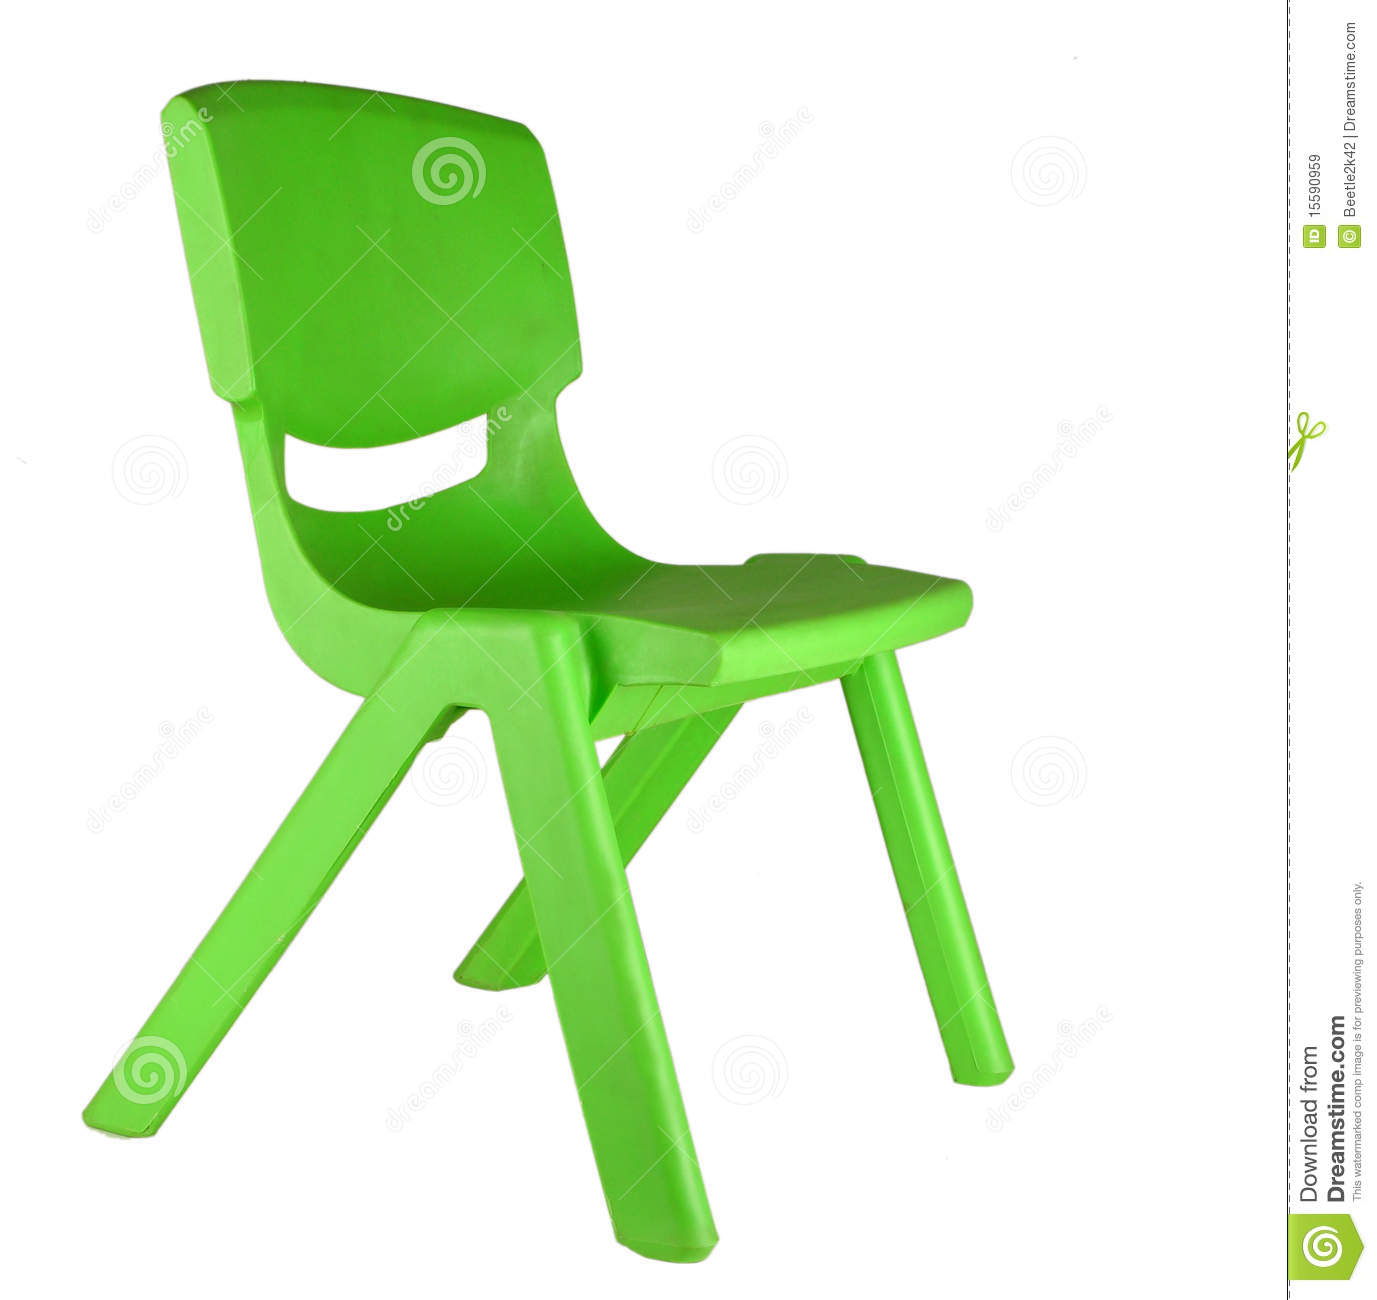 chair clipart kid